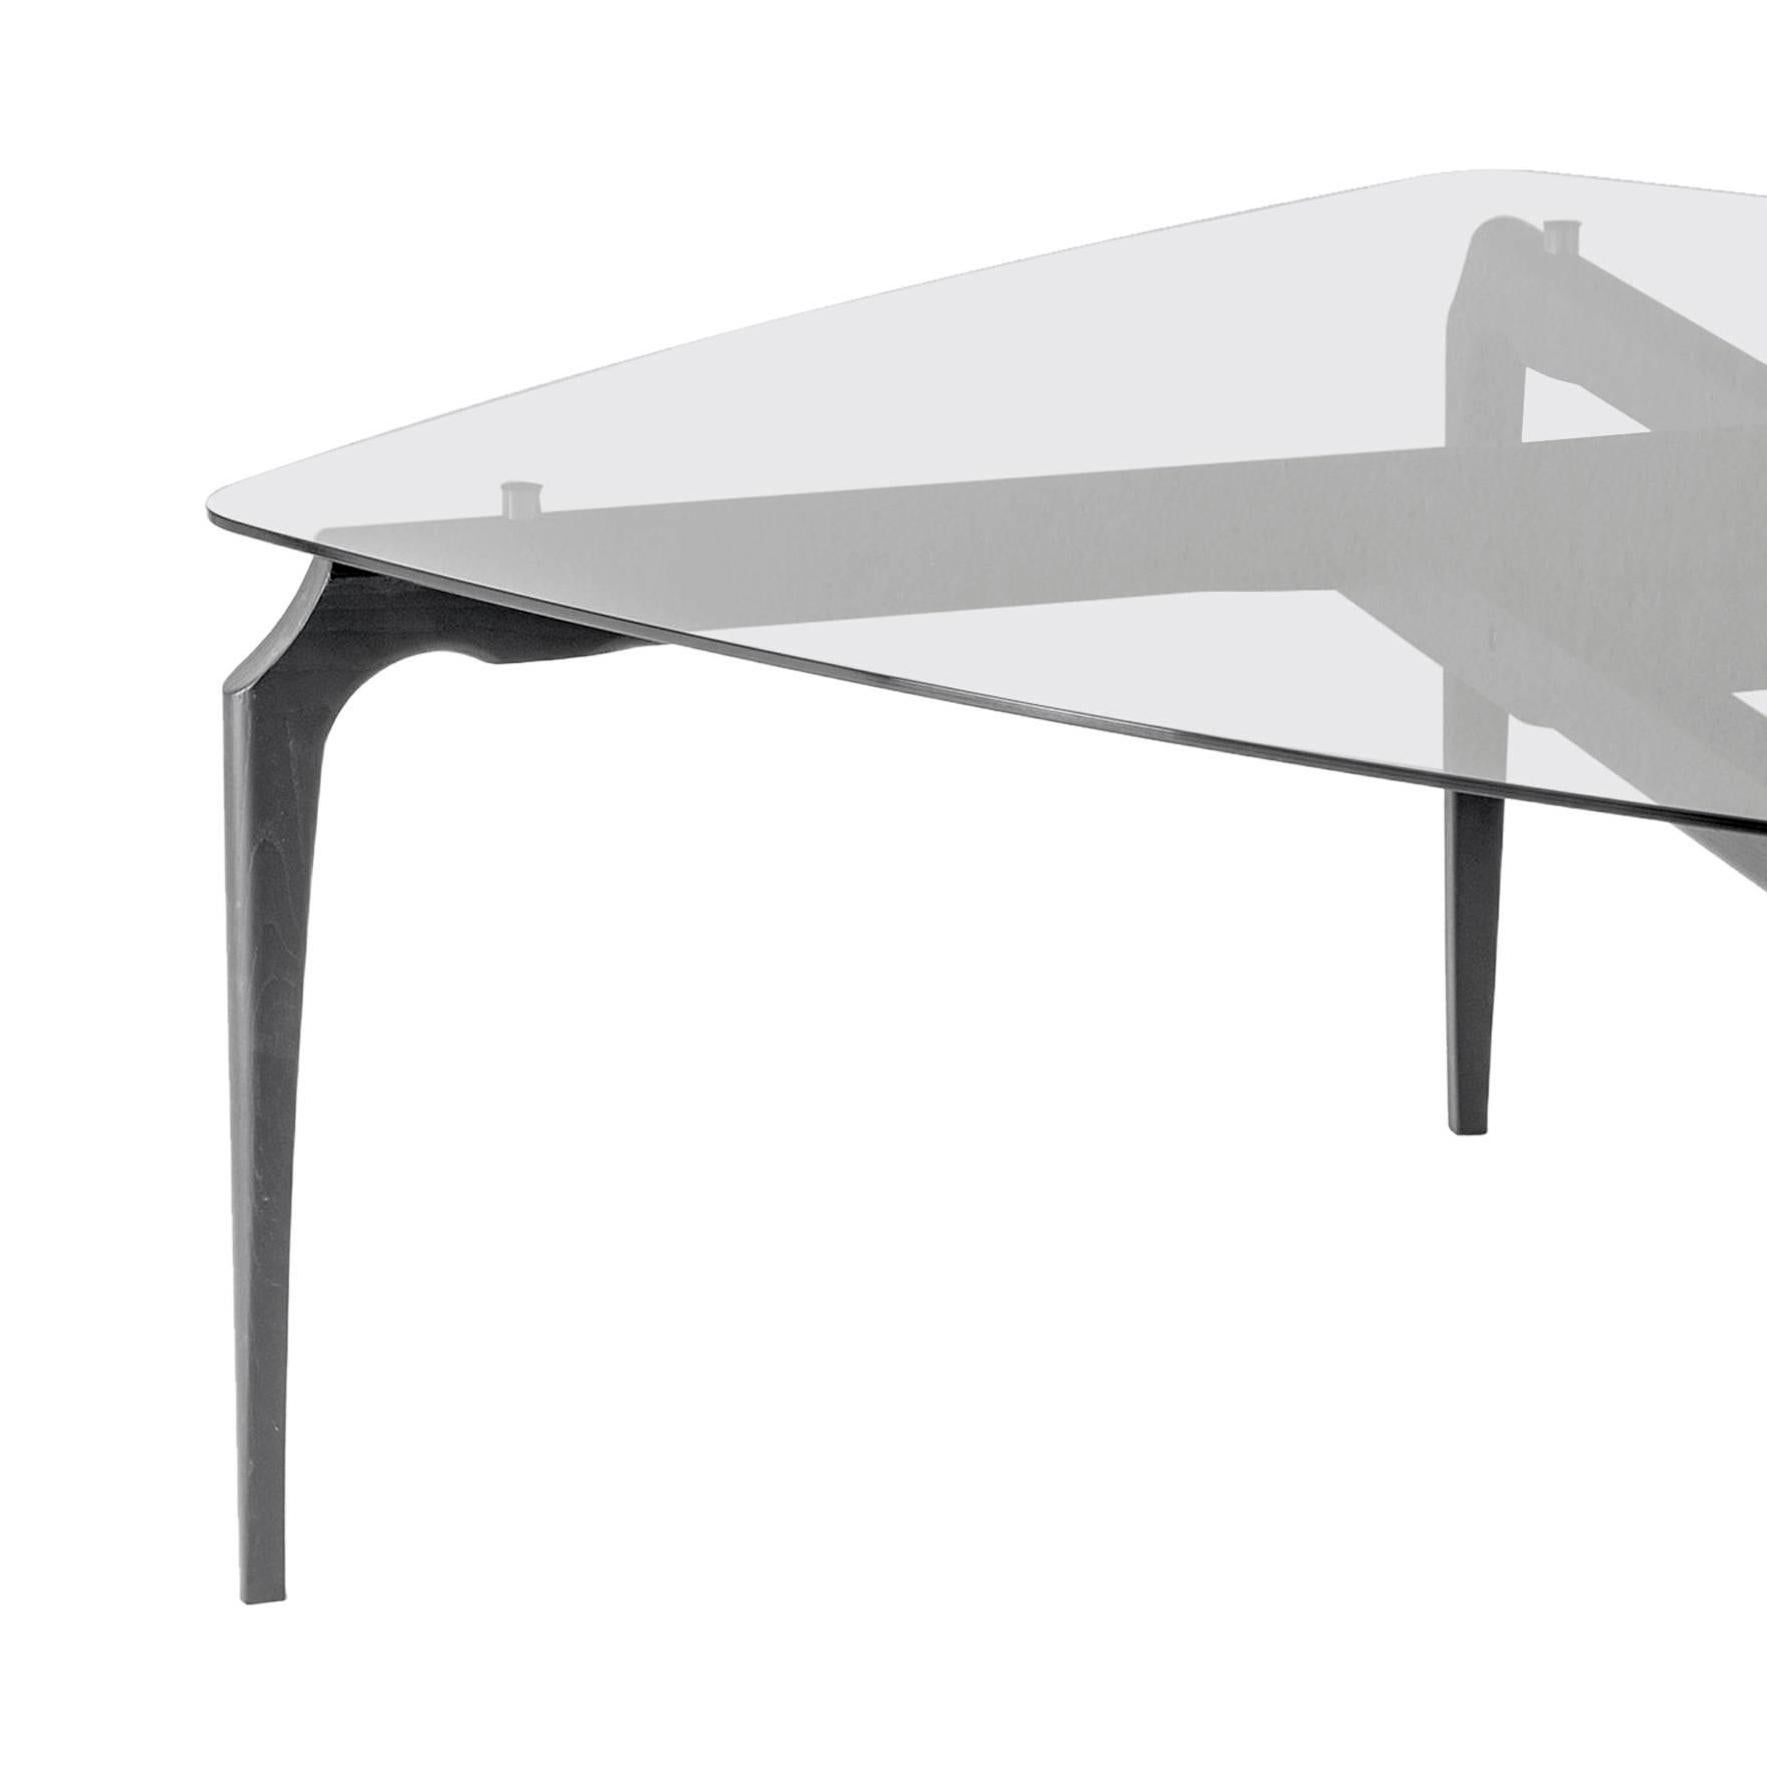 Tisch Gaulino, entworfen von Oscar Tusquets, hergestellt von BD Barcelona Design, ca. 2010.

Oscar Tusquets, Architekt, Künstler und Schriftsteller, hat im Laufe seiner langen Karriere fast alles entworfen. Vor allem viele Stühle, von denen einige